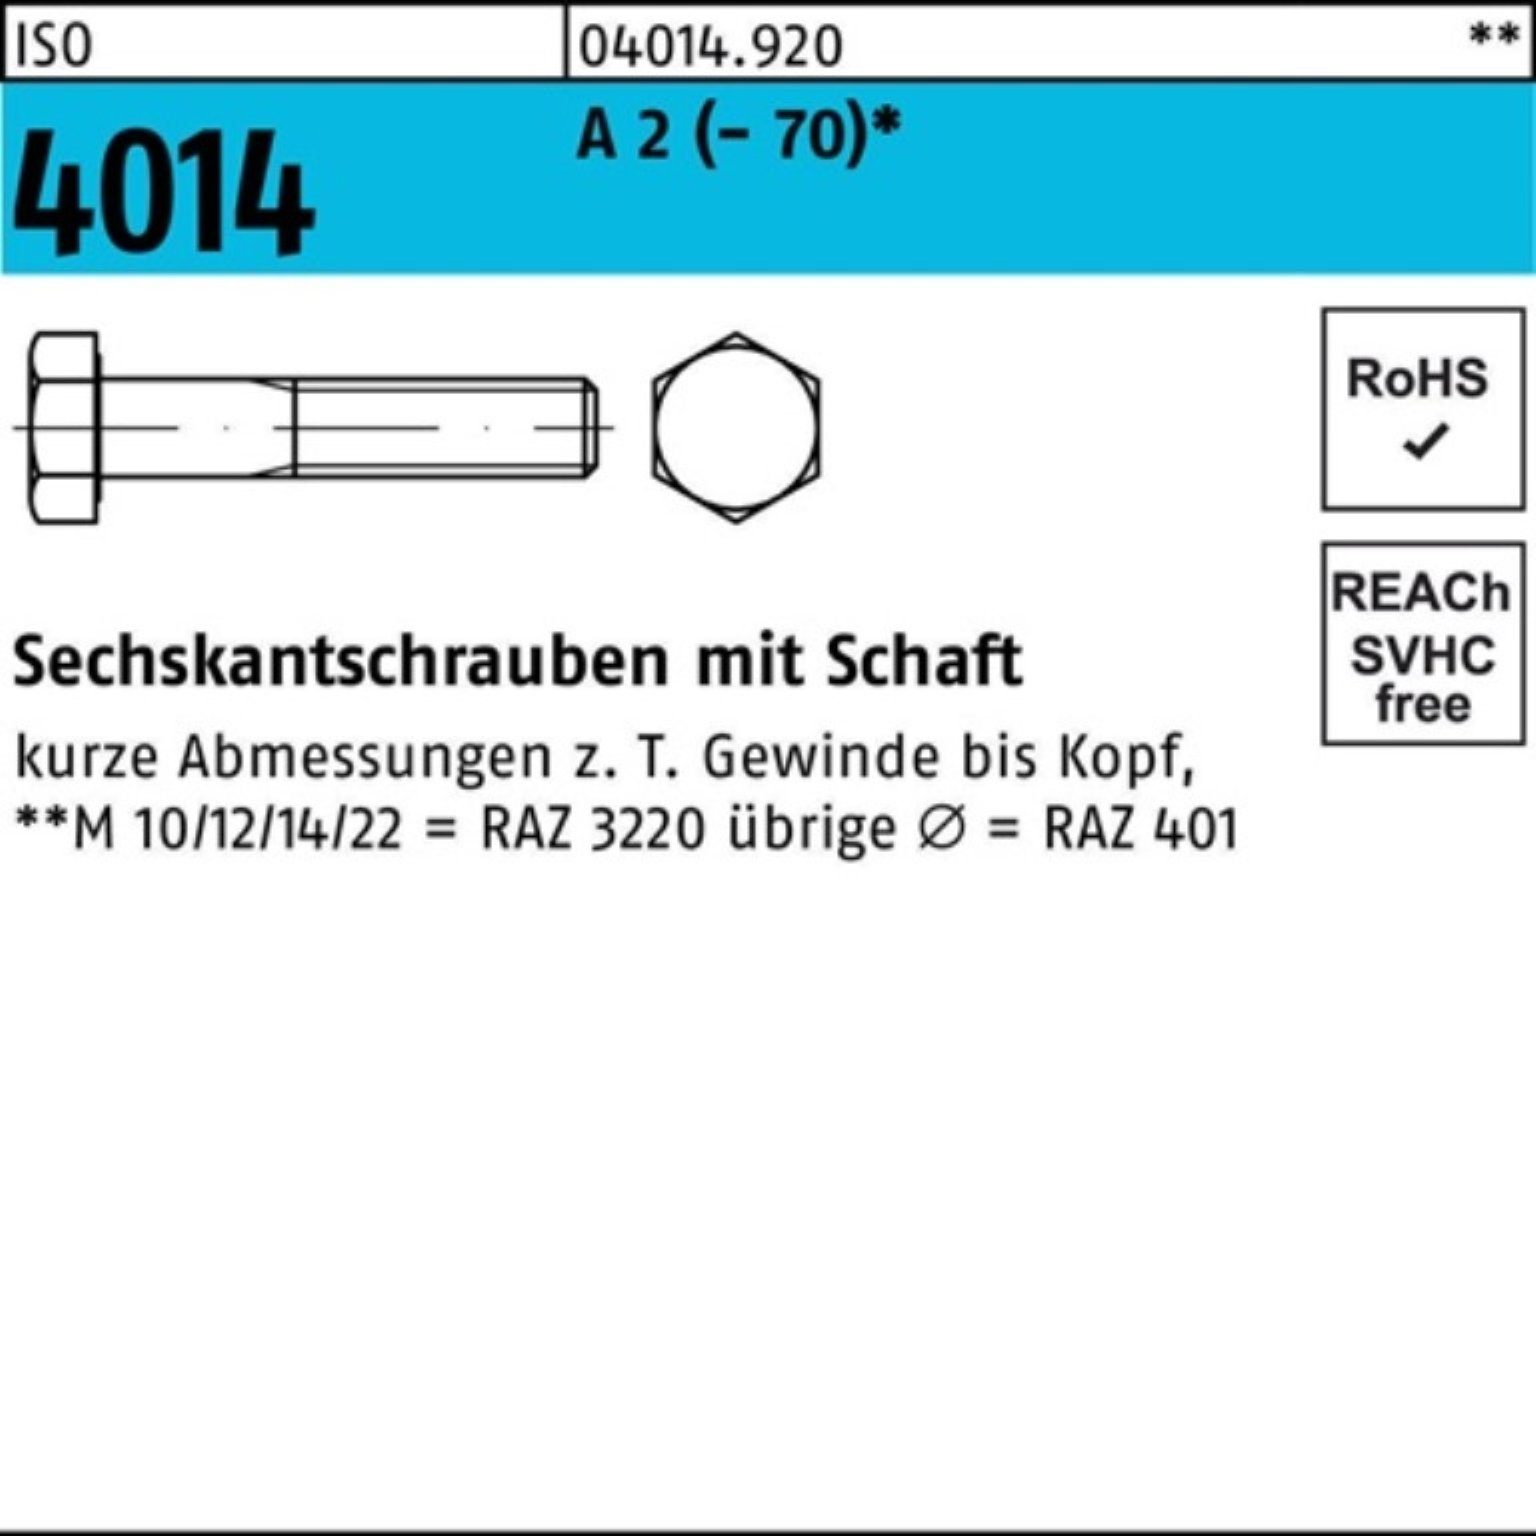 Bufab Sechskantschraube 100er Pack Sechskantschraube ISO 4014 Schaft M18x 65 A 2 (70) 1 Stü